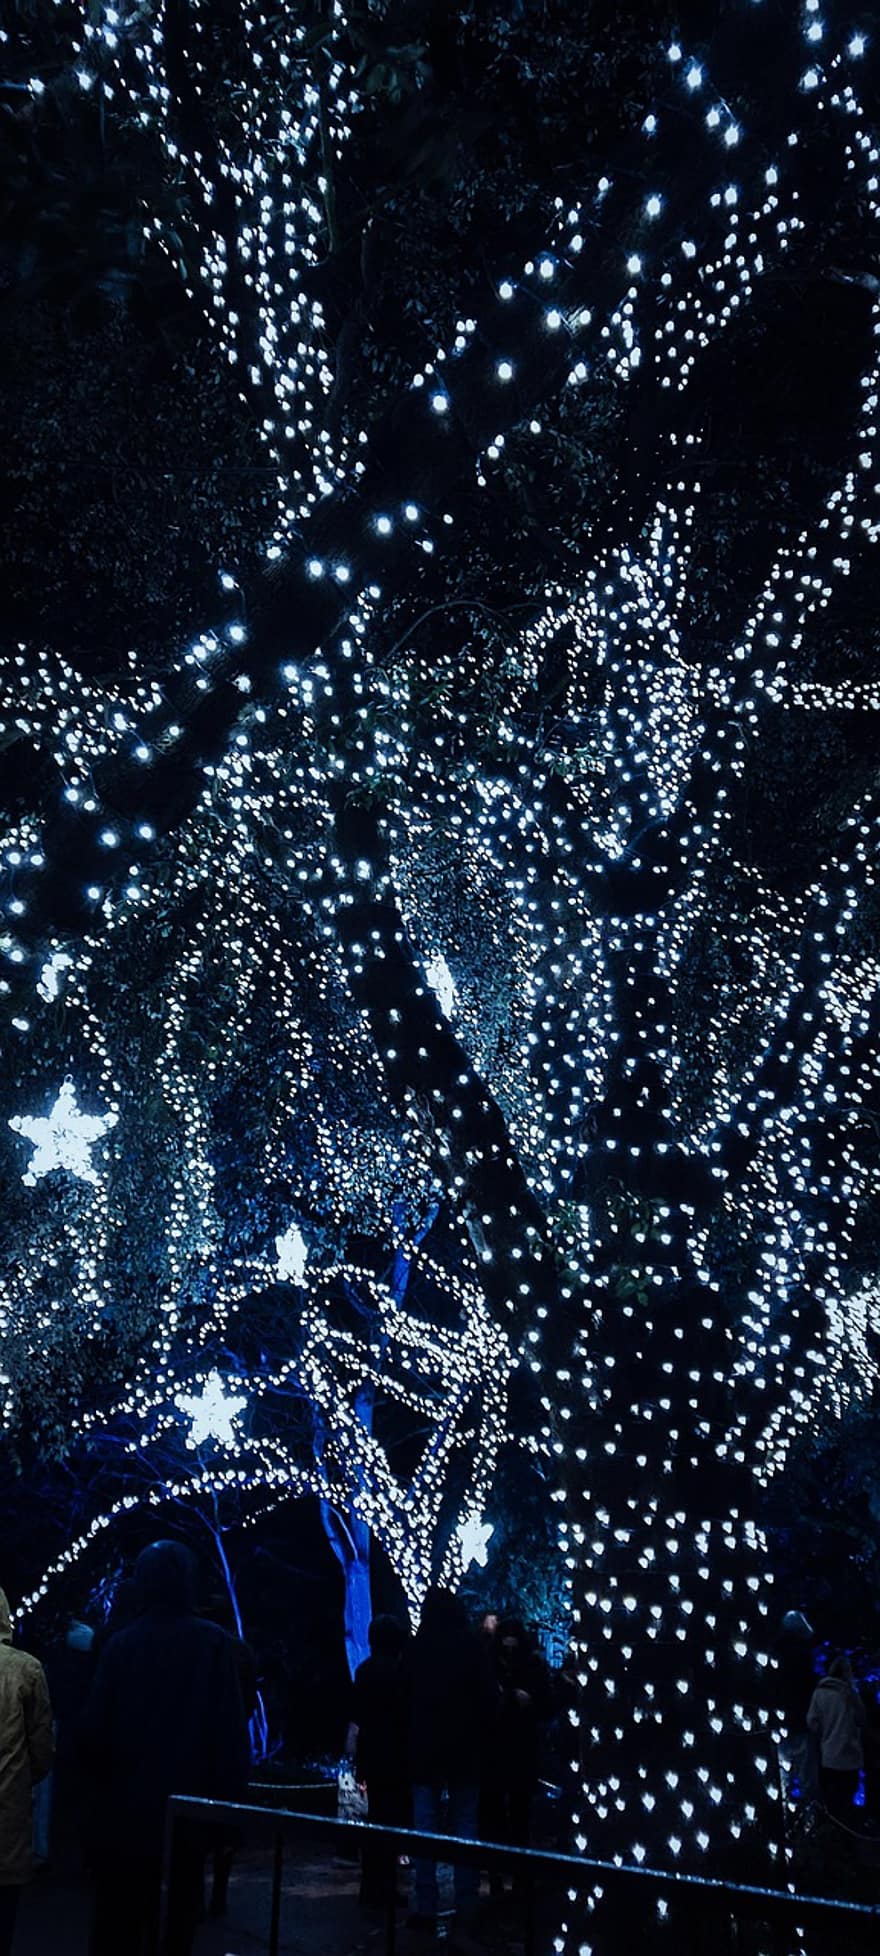 Tree, Fairy Lights, Illuminated, Christmas Lights, Stars, Christmas Stars, Glow, Glowing, Glowing Lights, Christmas Decorations, Night